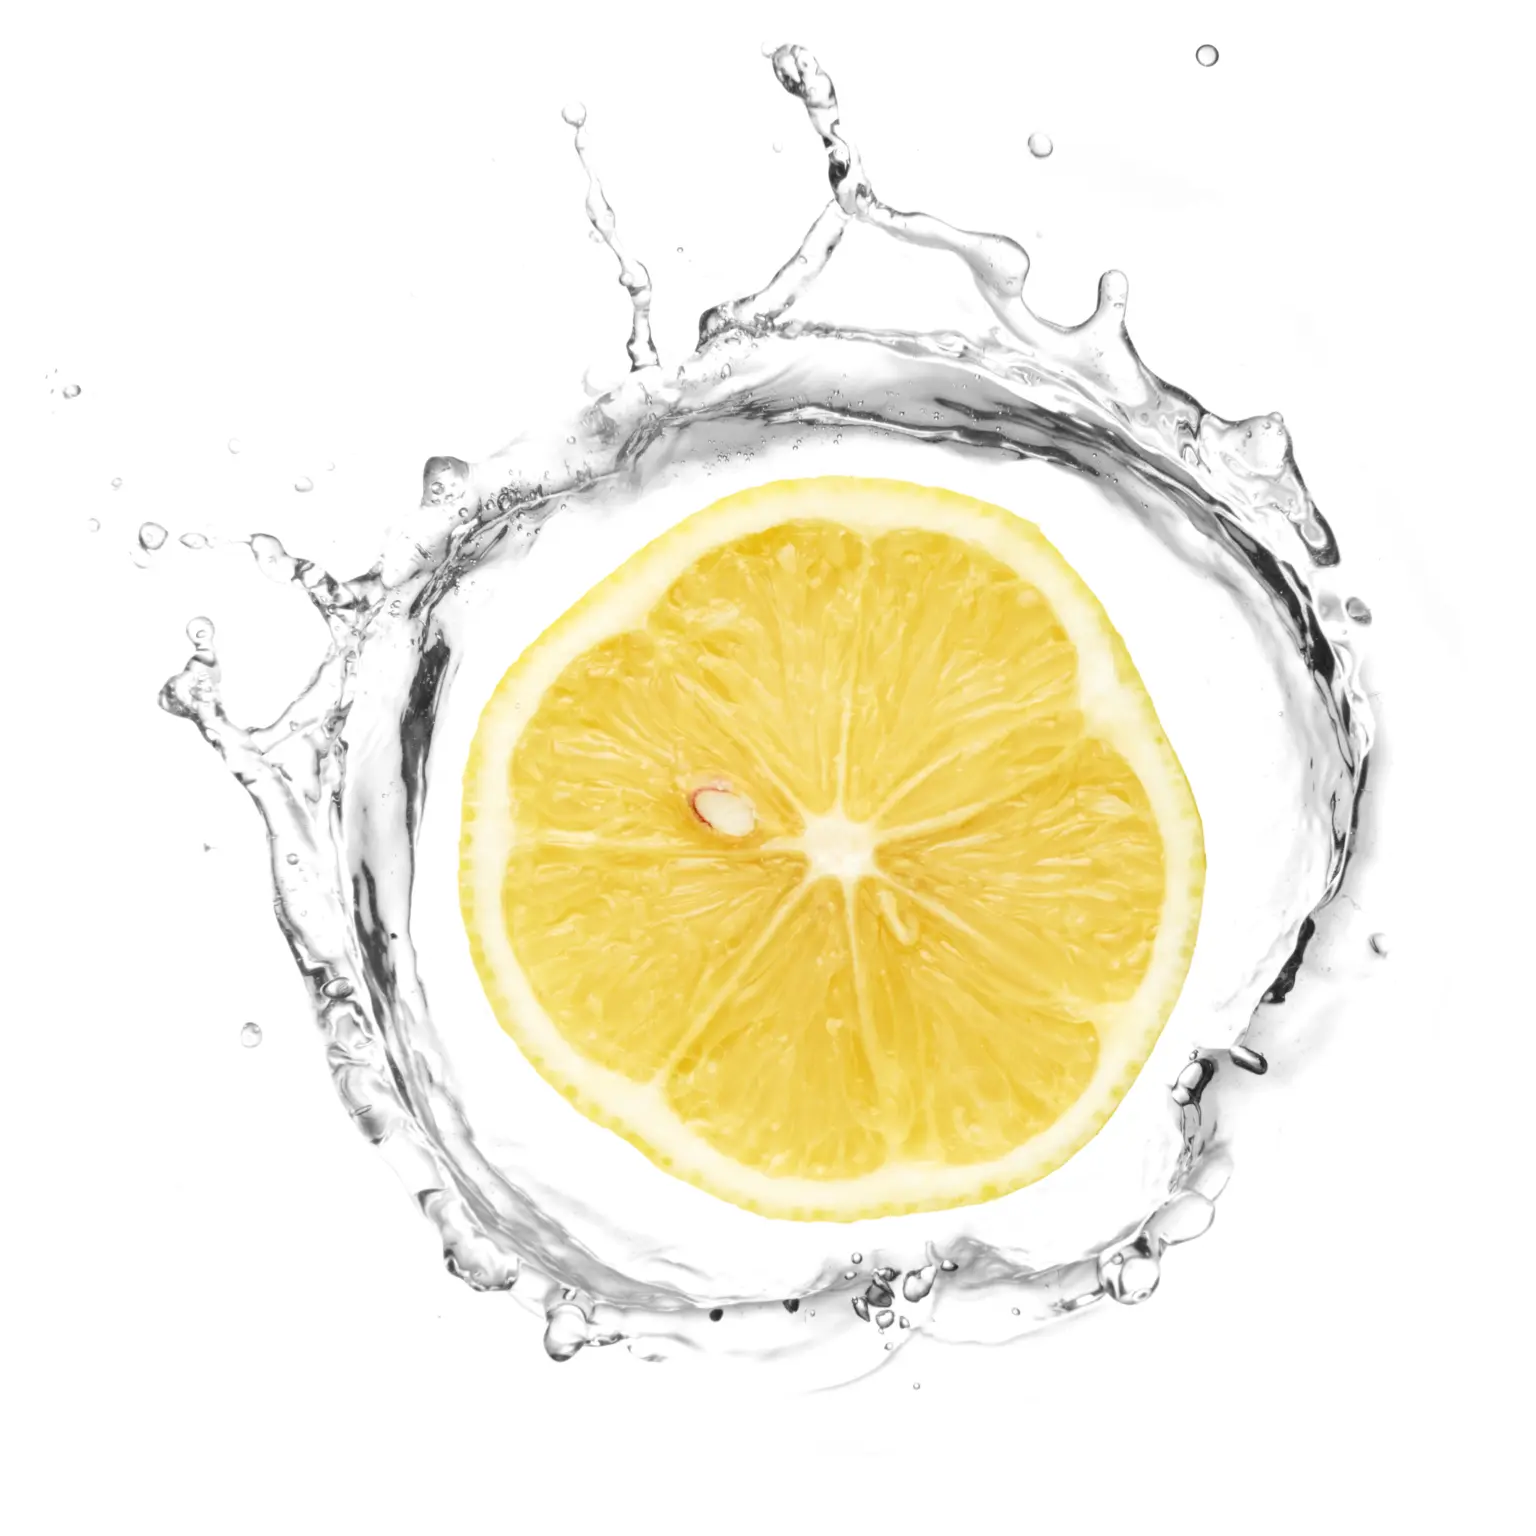 bere acqua e limone oltre ad essere dissetante porta diversi benefici per la salute